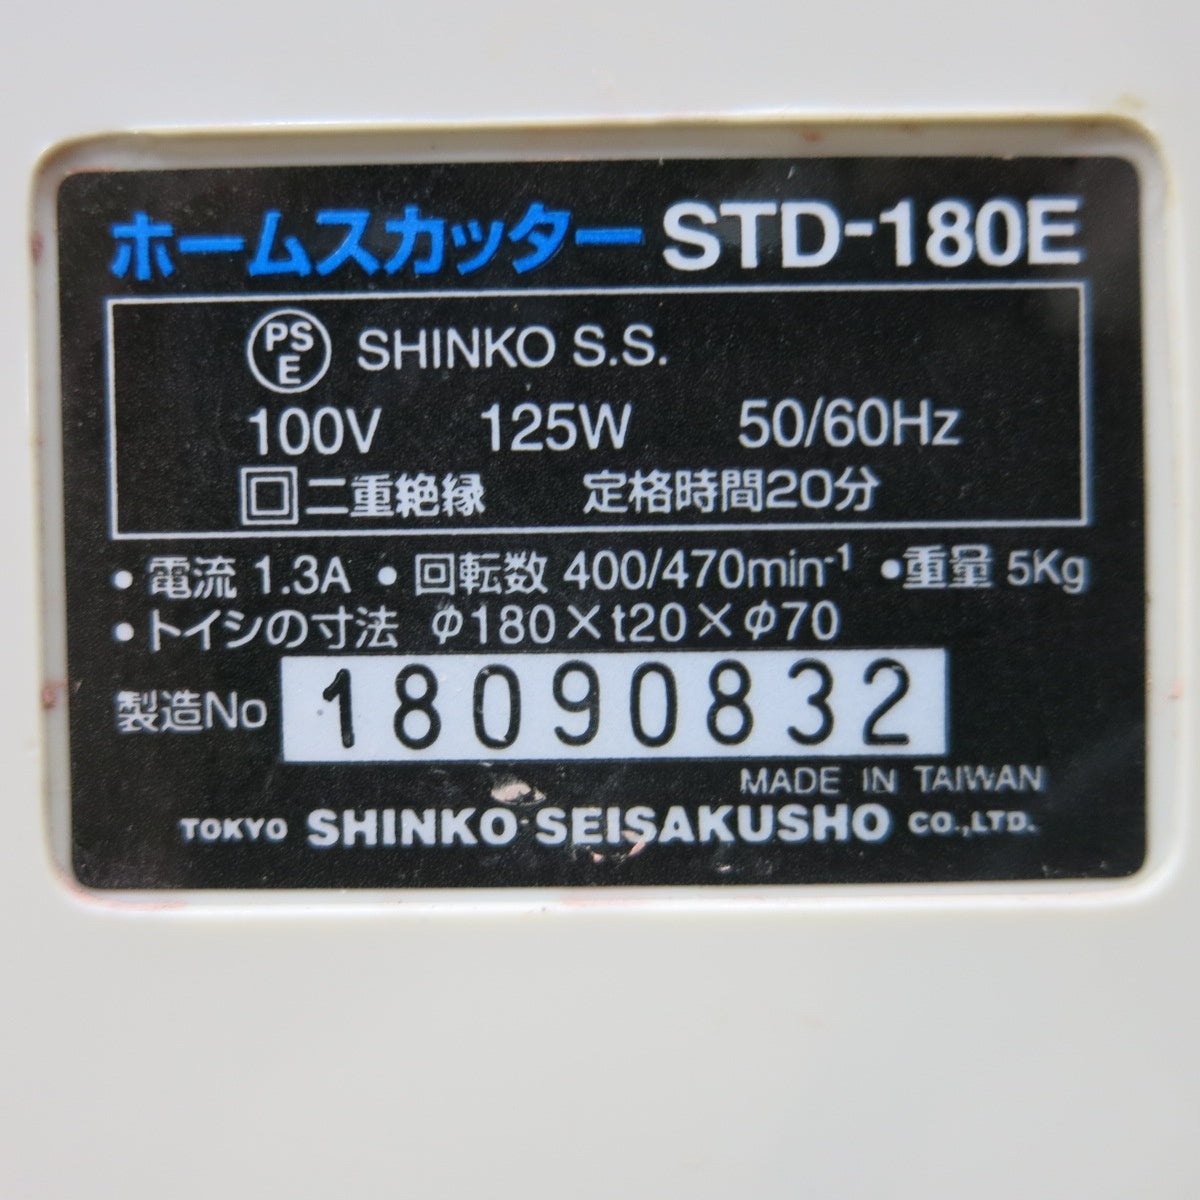 [送料無料] ◆SHINKO 新興製作所 ホームスカッター STD-180E 電動 刃物とぎ機 研磨機 100V 50/60Hz◆